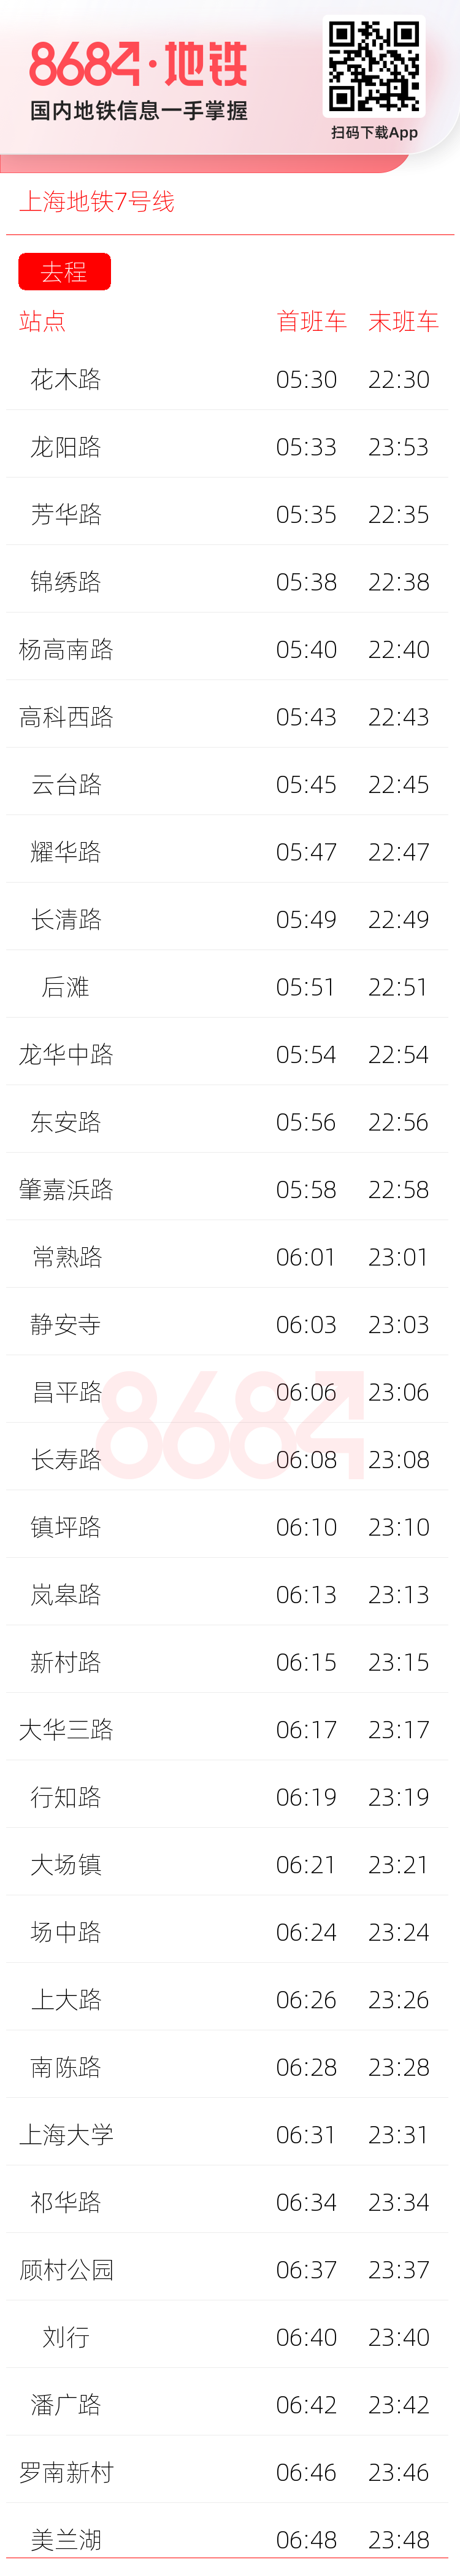 上海地铁7号线运营时间表